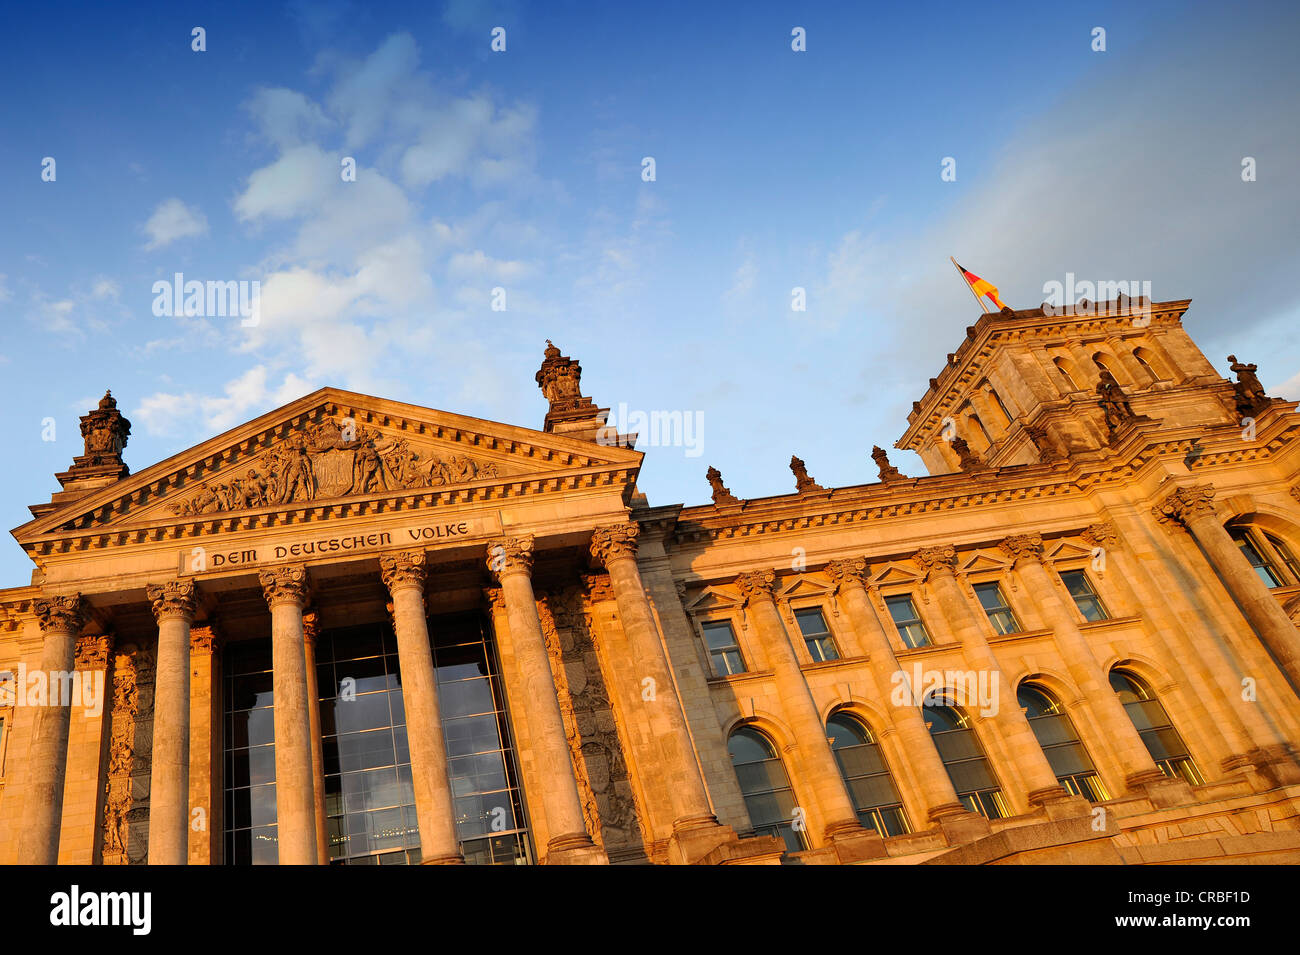 Edificio del Reichstag nella luce della sera, Deutscher Bundestag, il parlamento tedesco, scritte 'Dem Deutschen Volke', Tedesco per 'all' Foto Stock